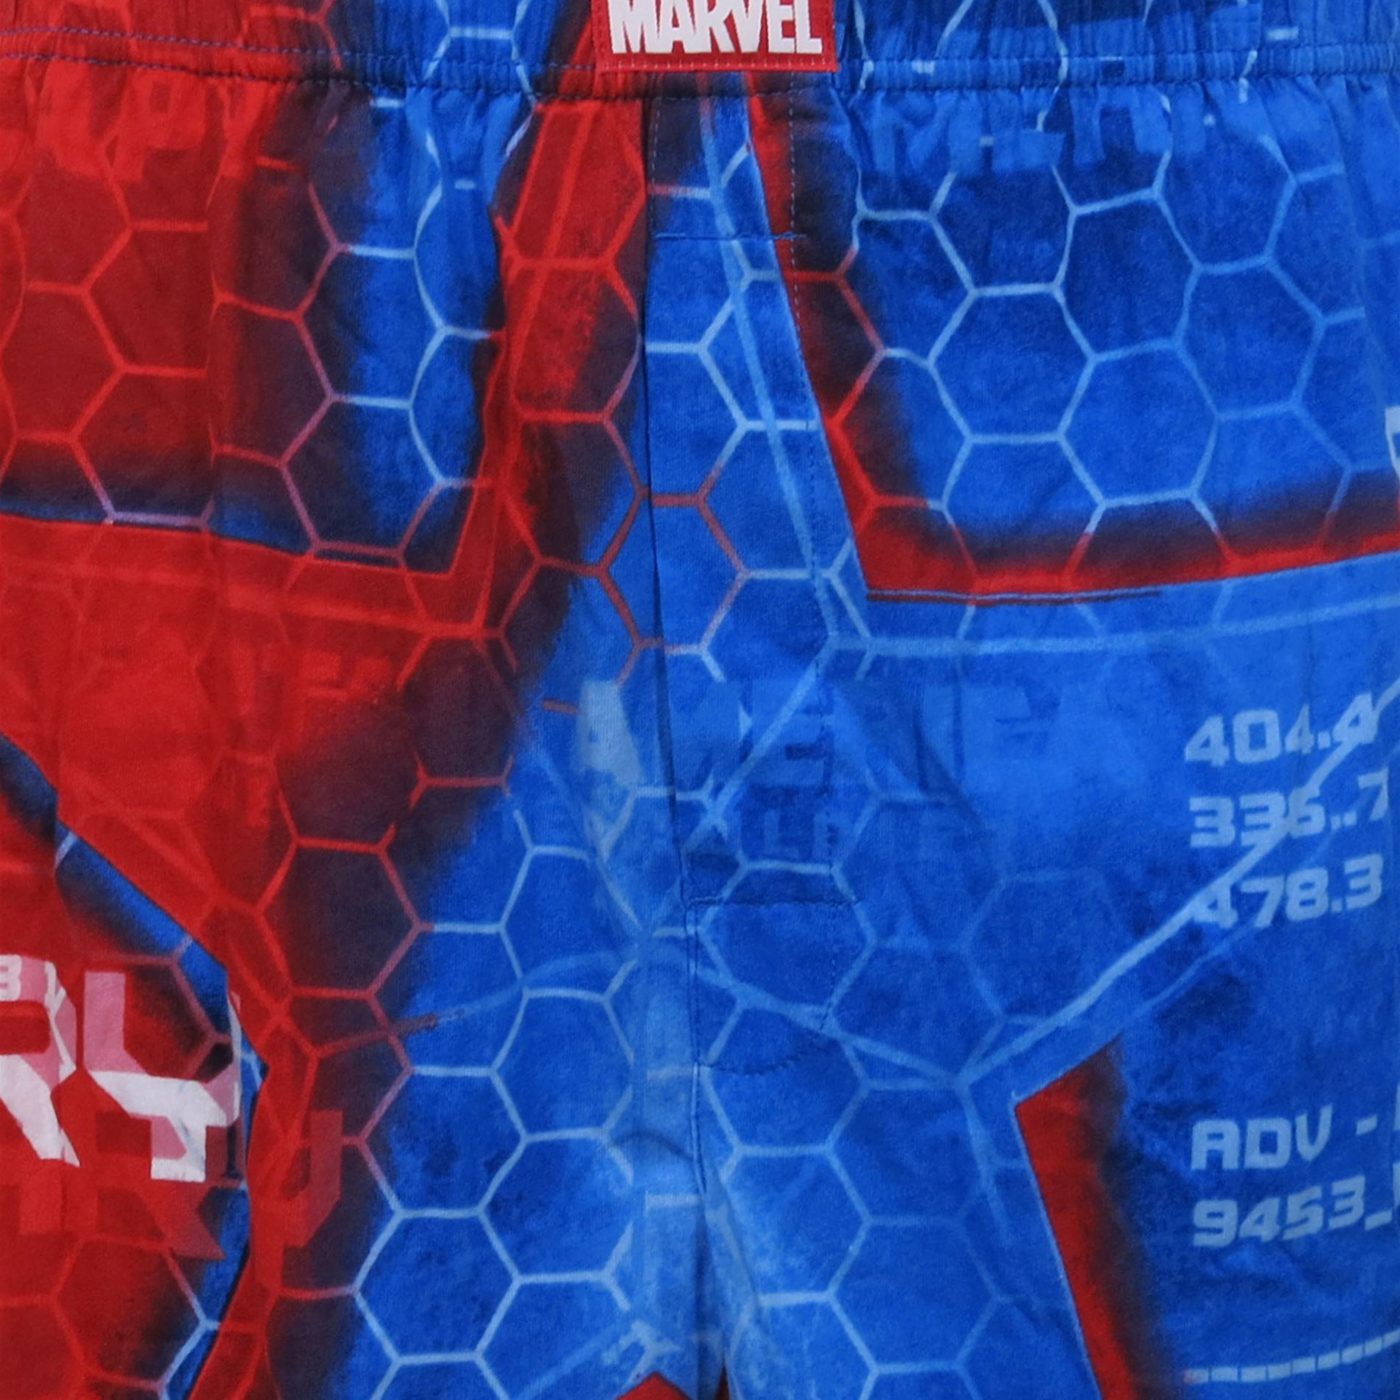 Captain America Legend Boxer Shorts